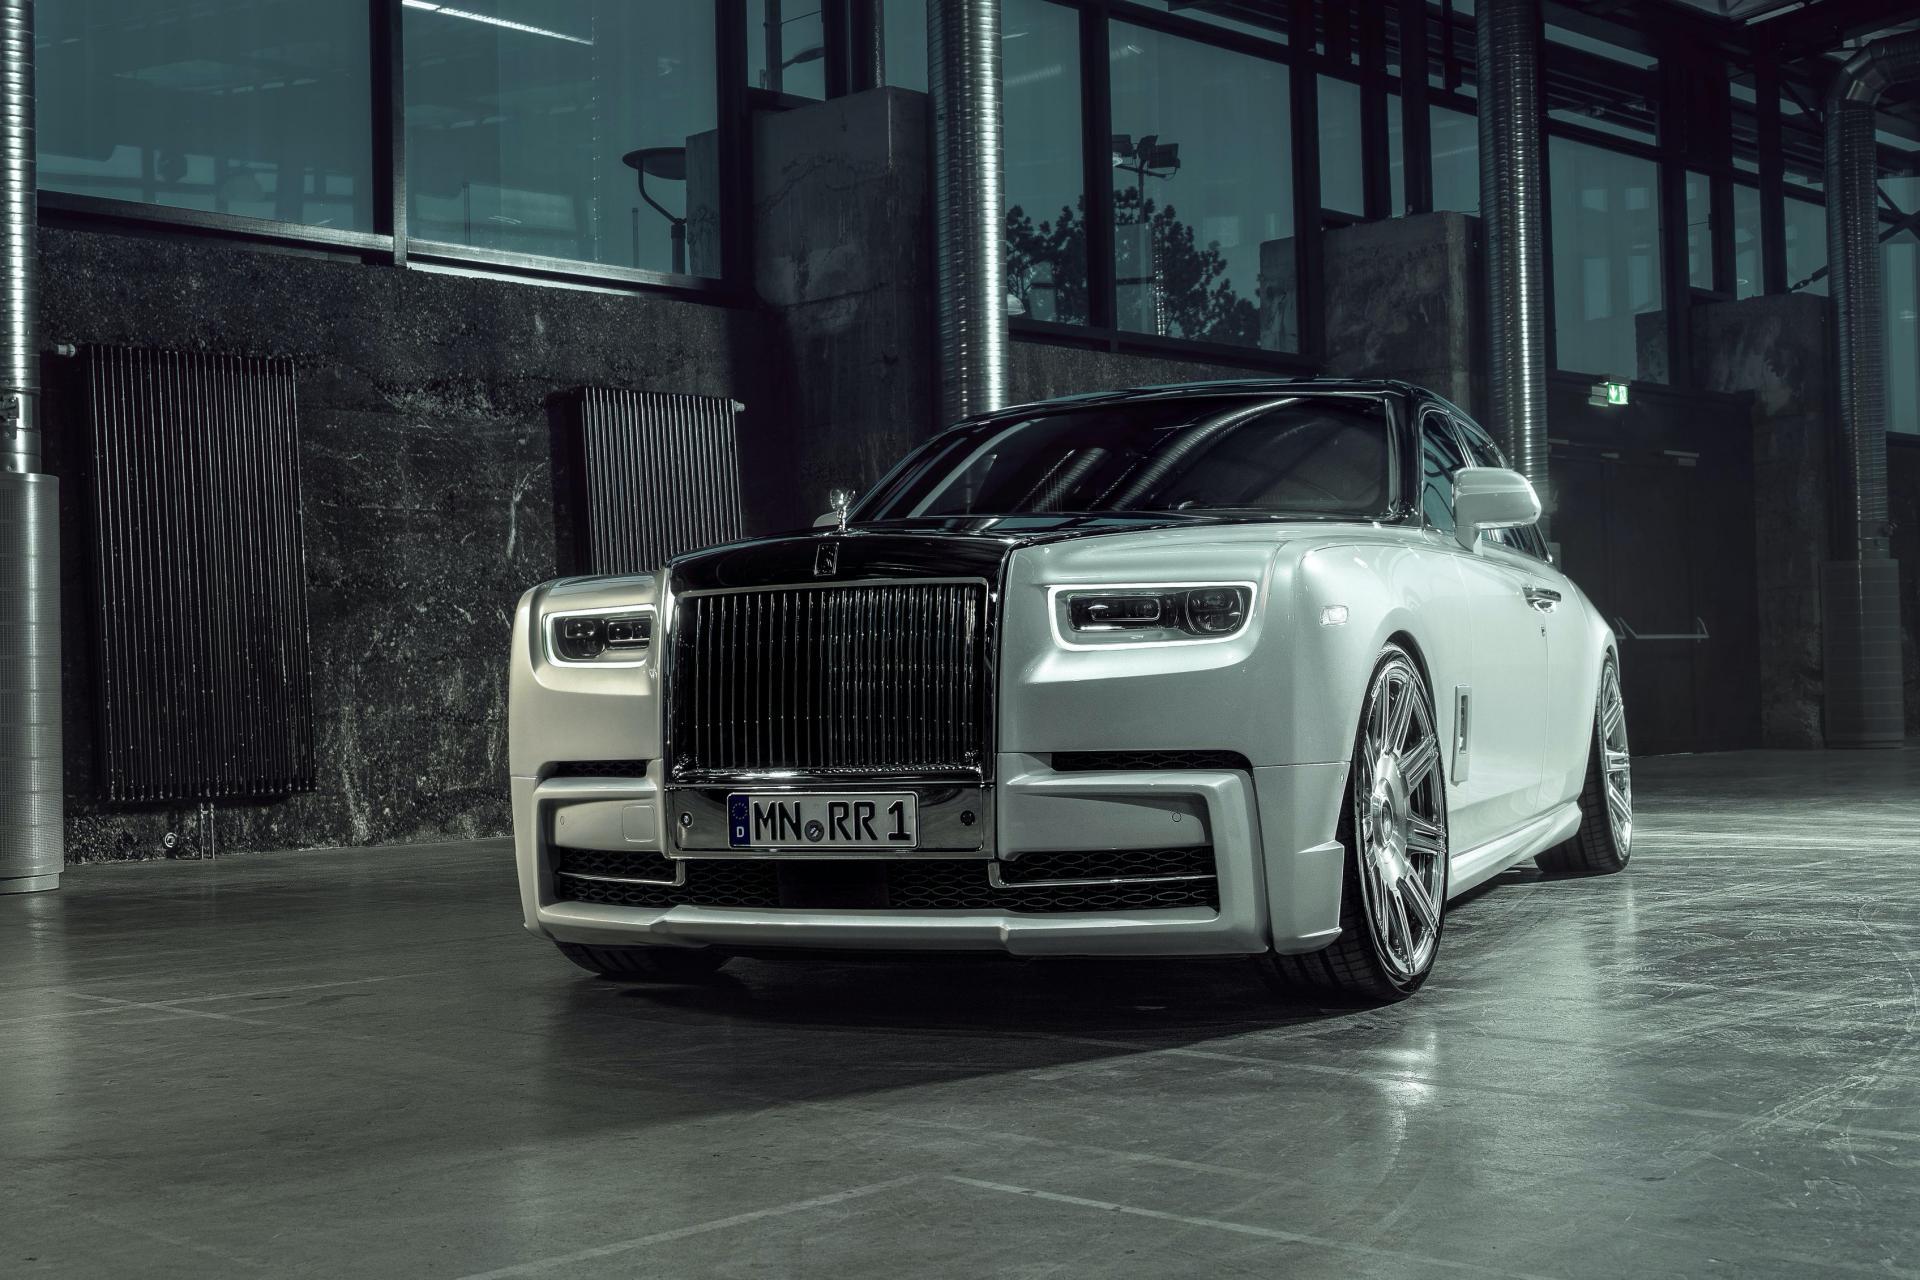 Siêu xe Rolls Royce đắt nhất có giá hơn 54 tỷ